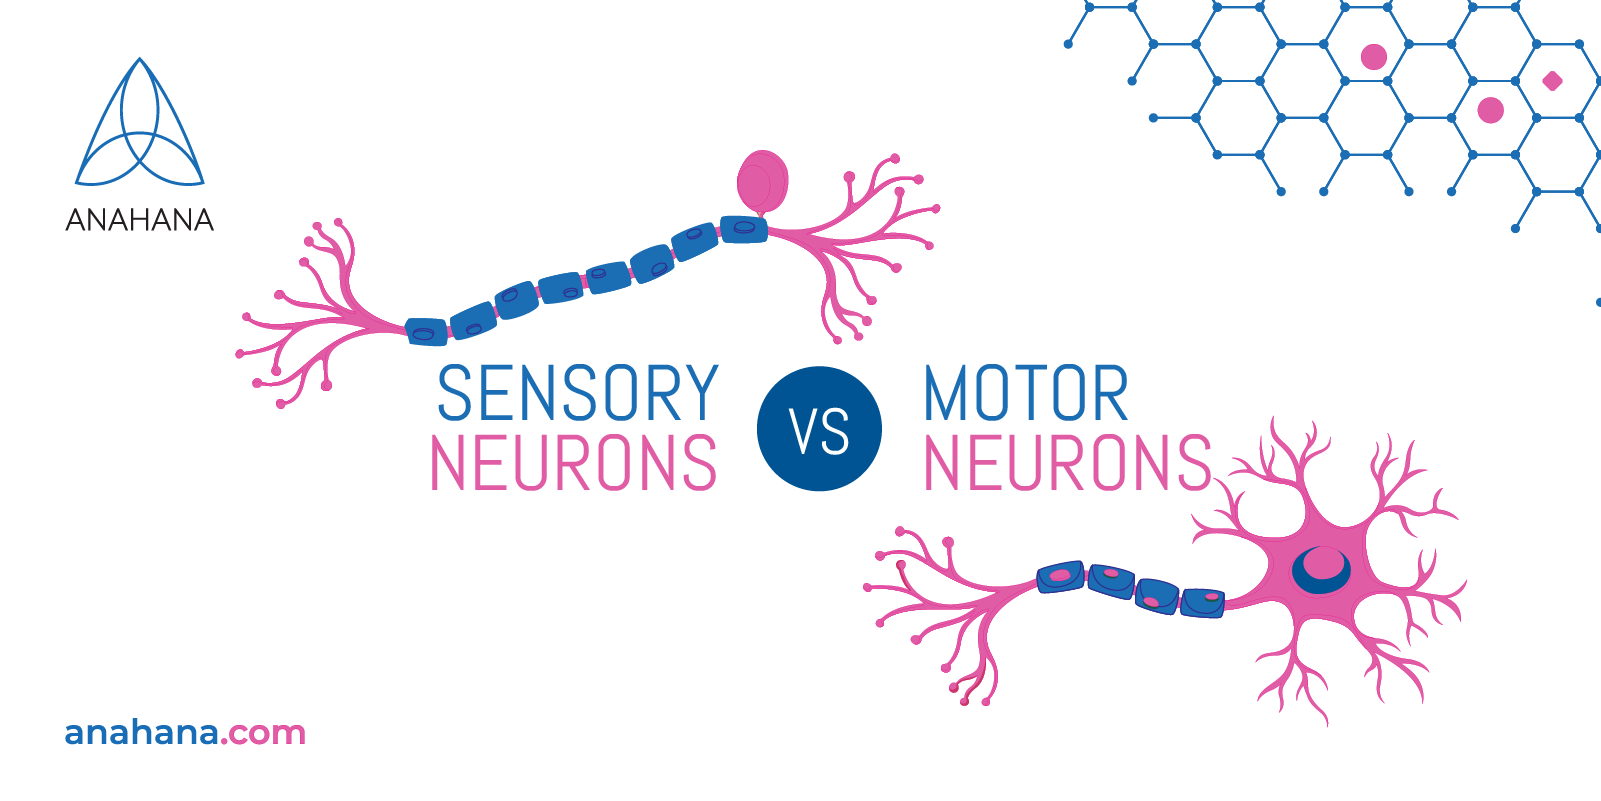 neuroni sensoriali e neuroni motori - quarto sito web